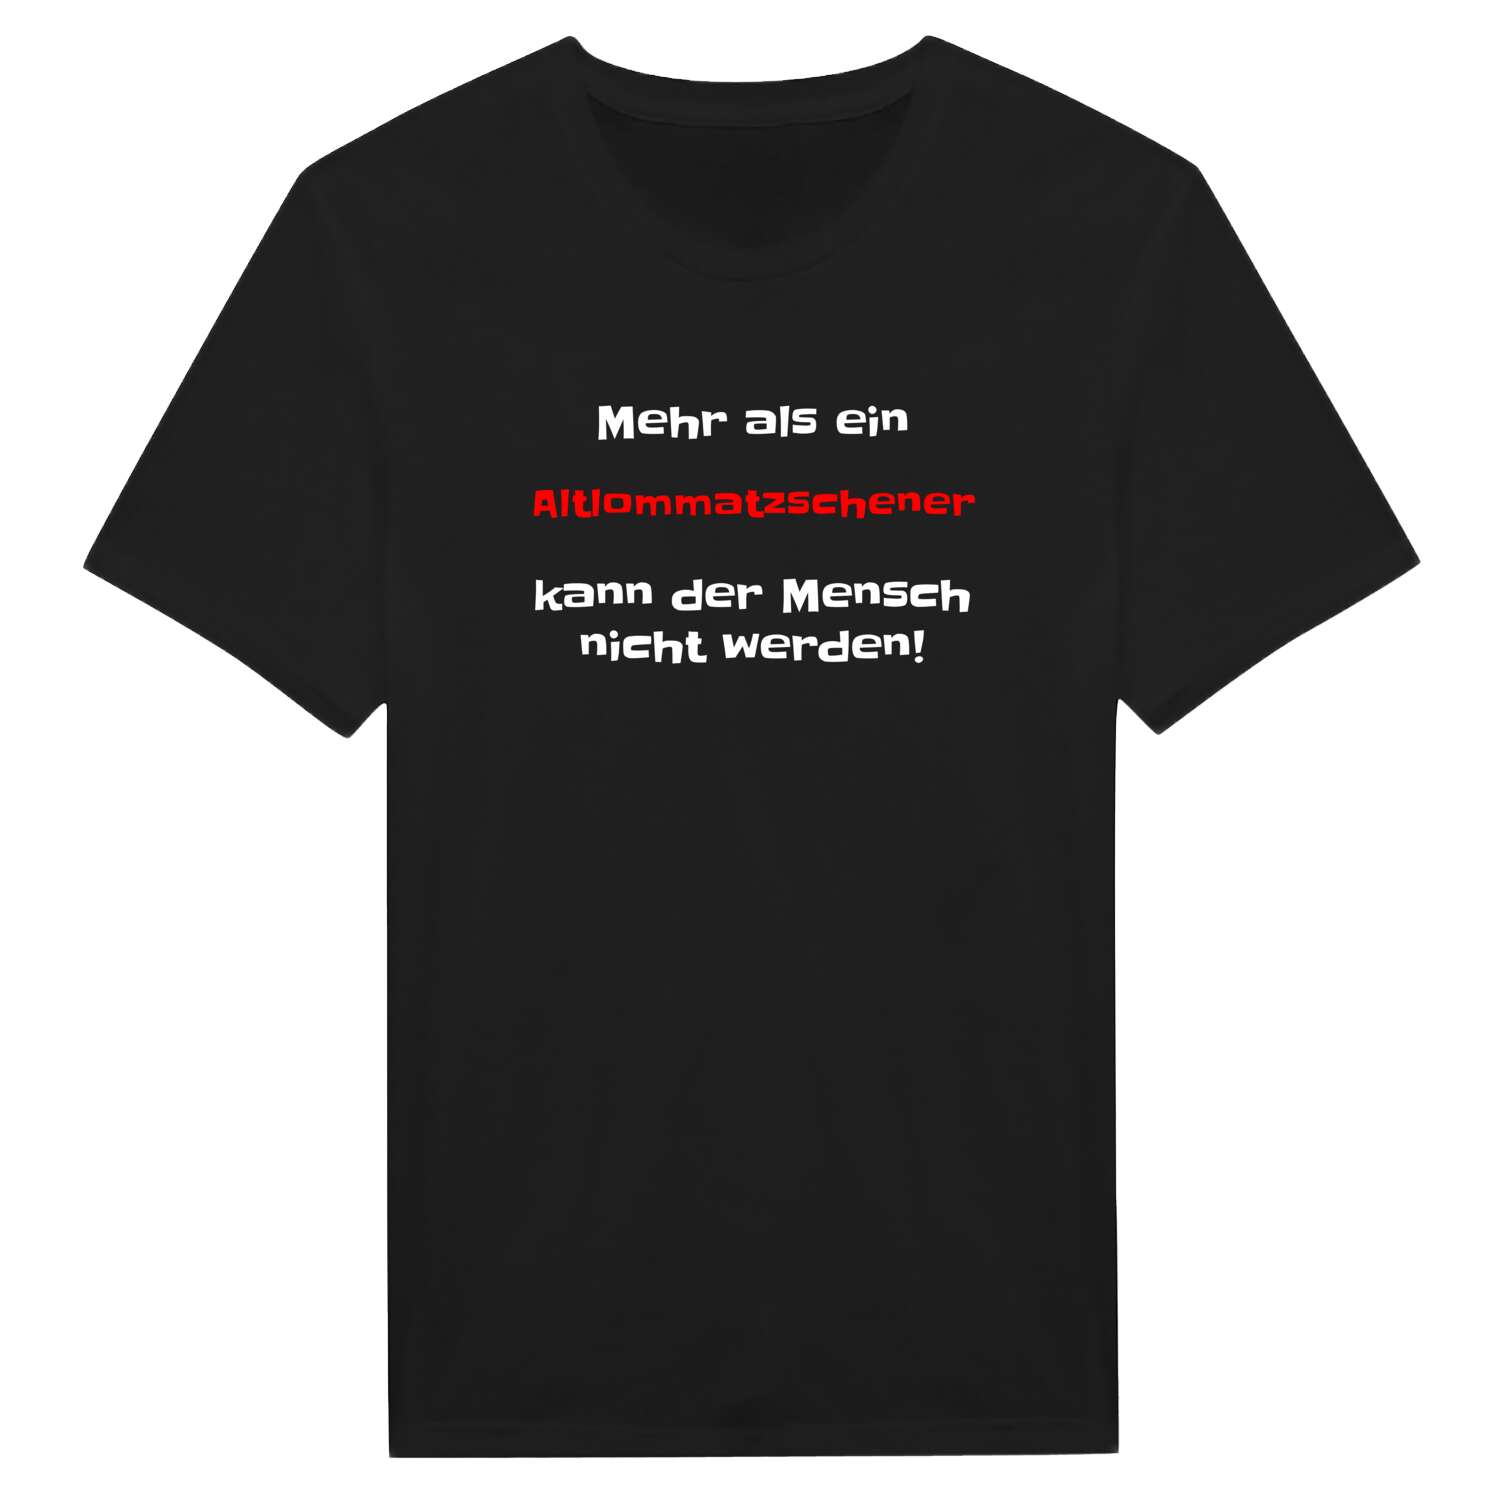 Altlommatzsch T-Shirt »Mehr als ein«